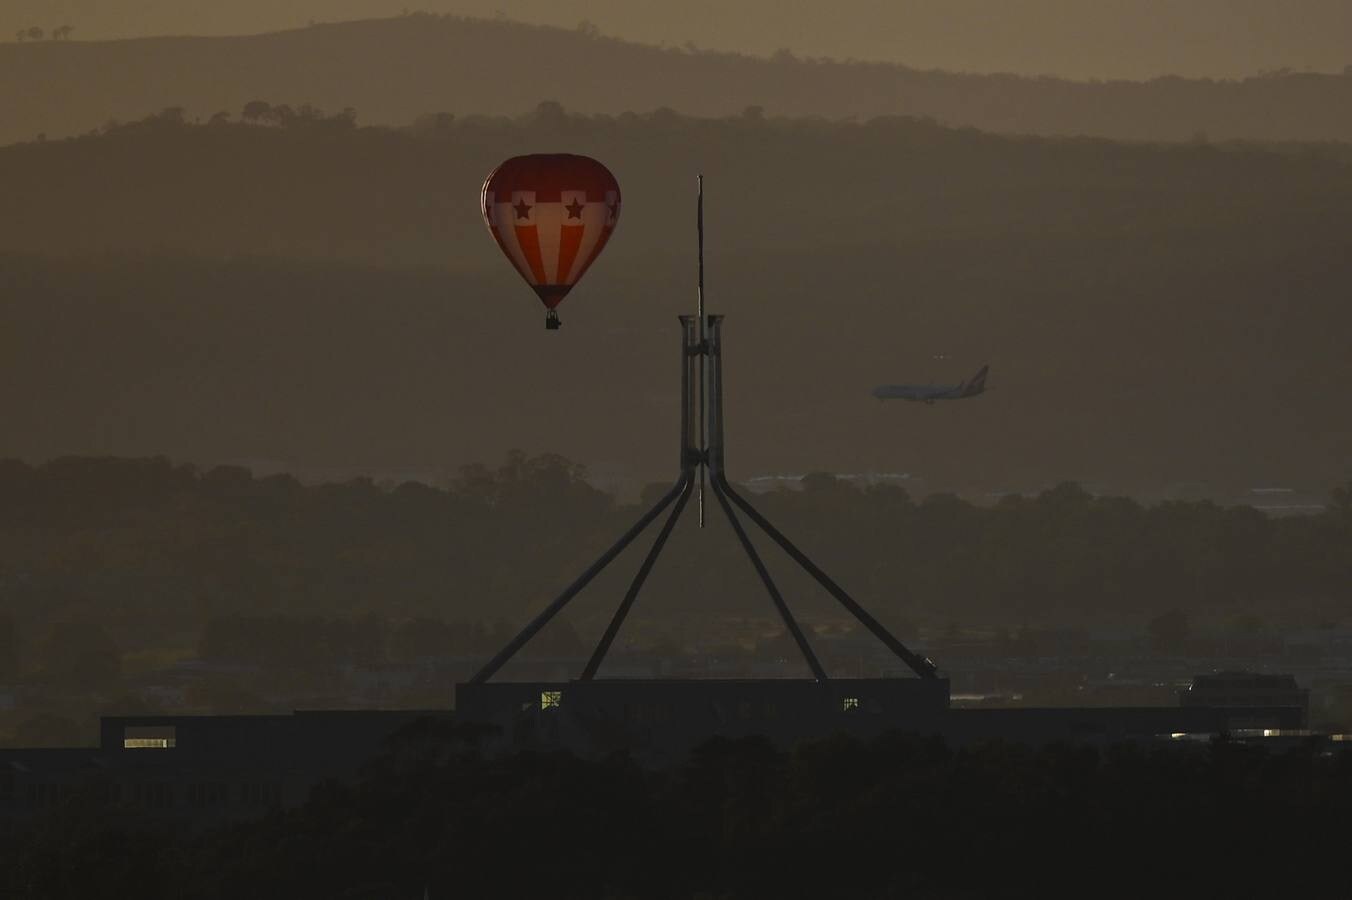 Observan cómo los globos aerostáticos se elevan sobre el lago Burley-Griffin durante el festival internacional de globos de Camberra, Australia. El festival es considerado como uno de los más grandes del mundo.